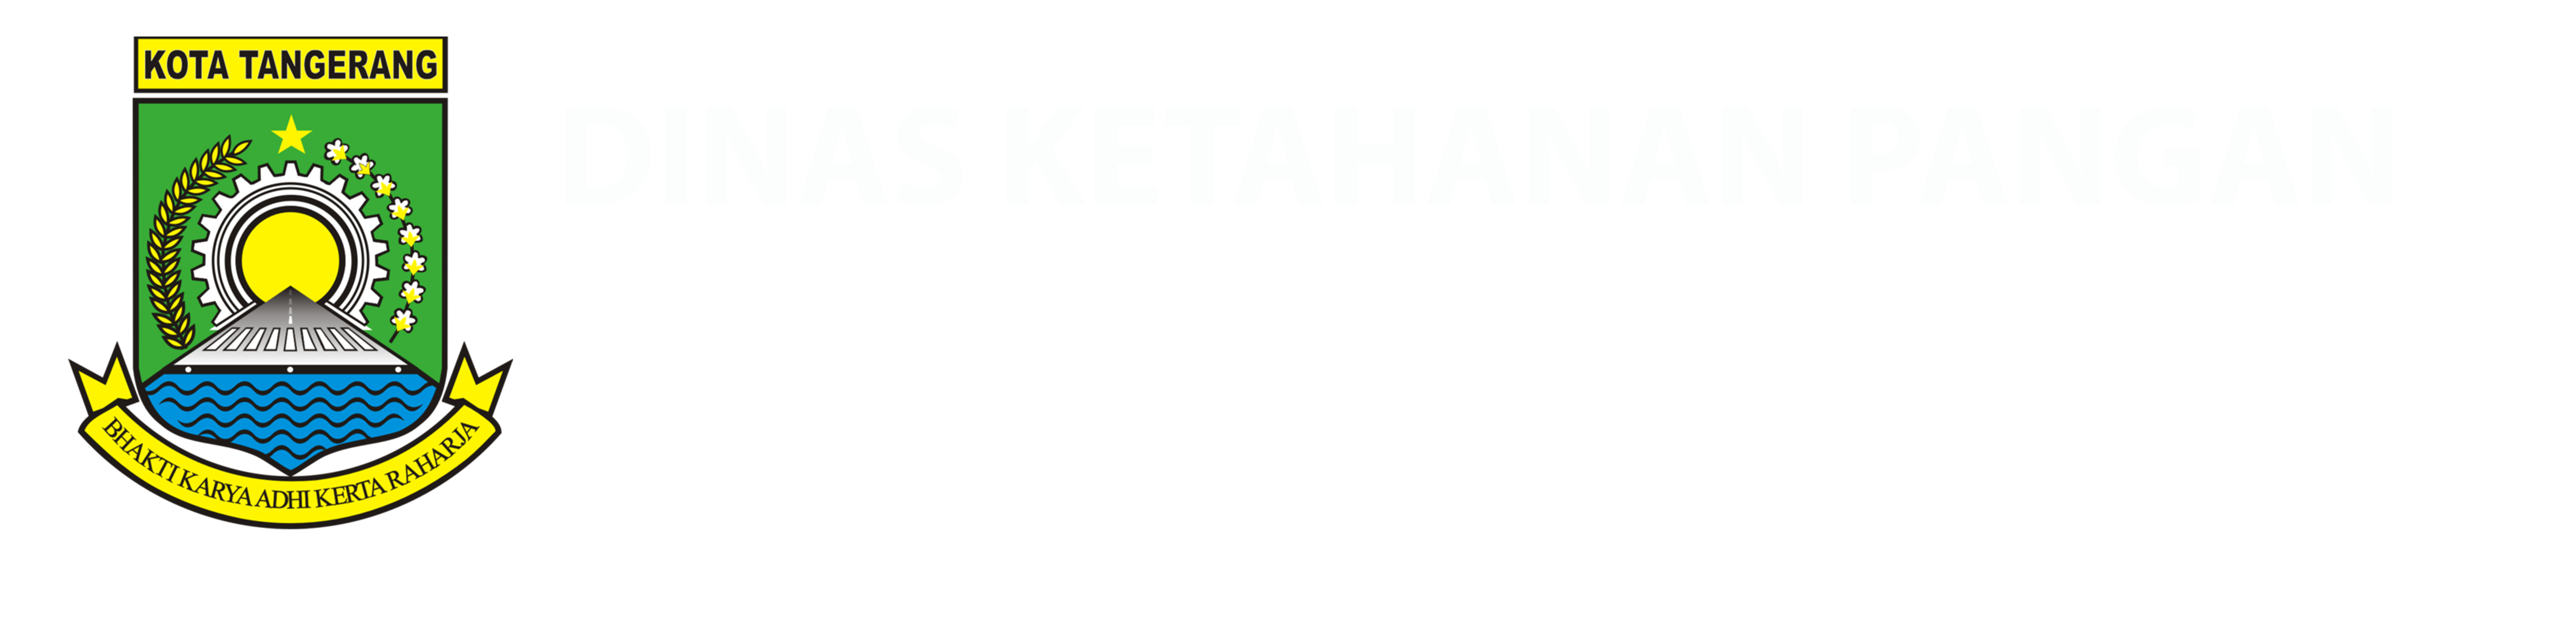 Logo DKP Kota Tangerang